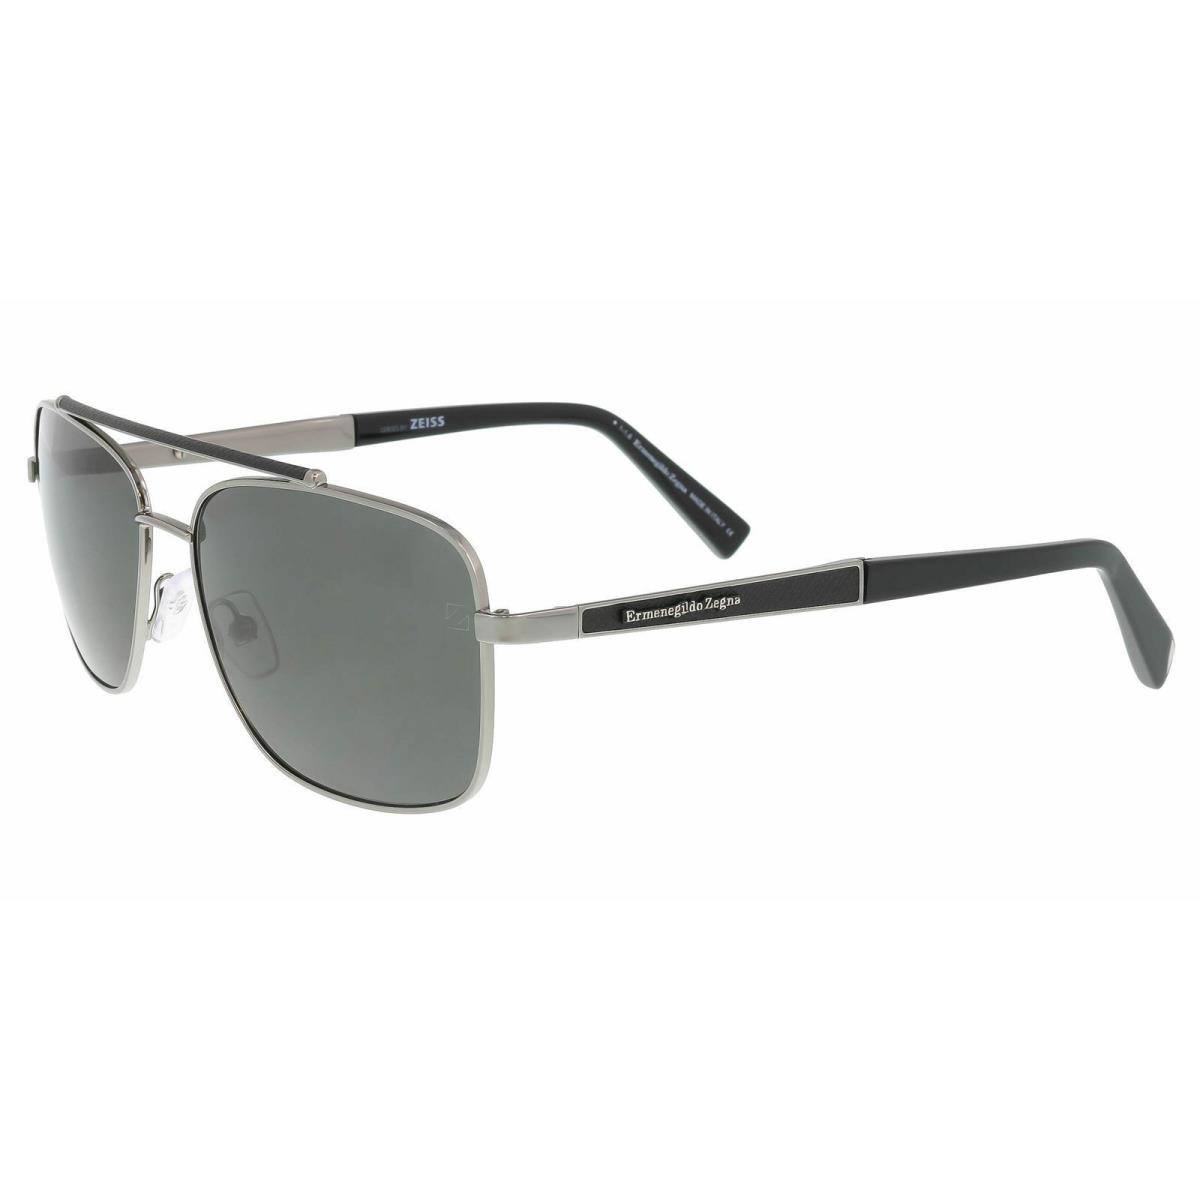 Ermenegildo Zegna EZ 0036 12D Silver/black Square Sunglasses